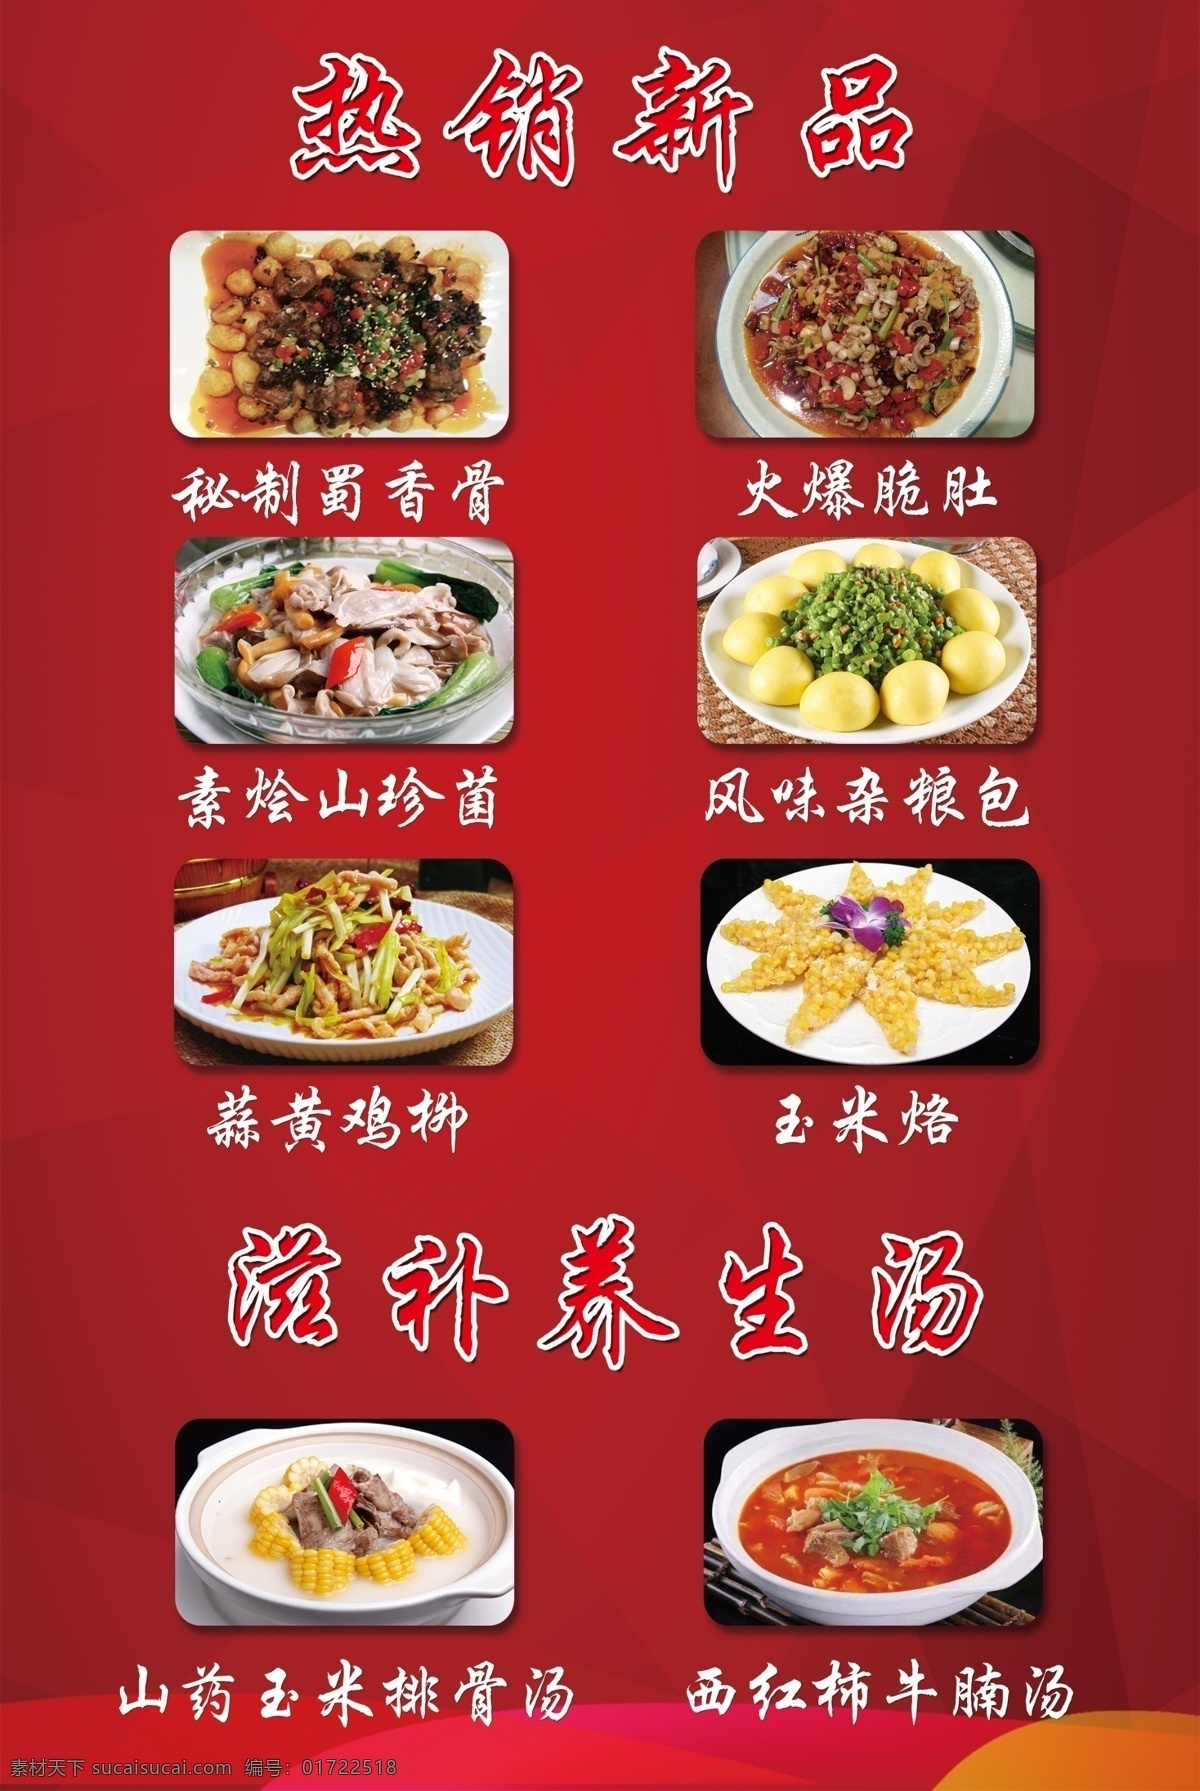 川菜馆广告 川菜 菜品 展示 分层 红色